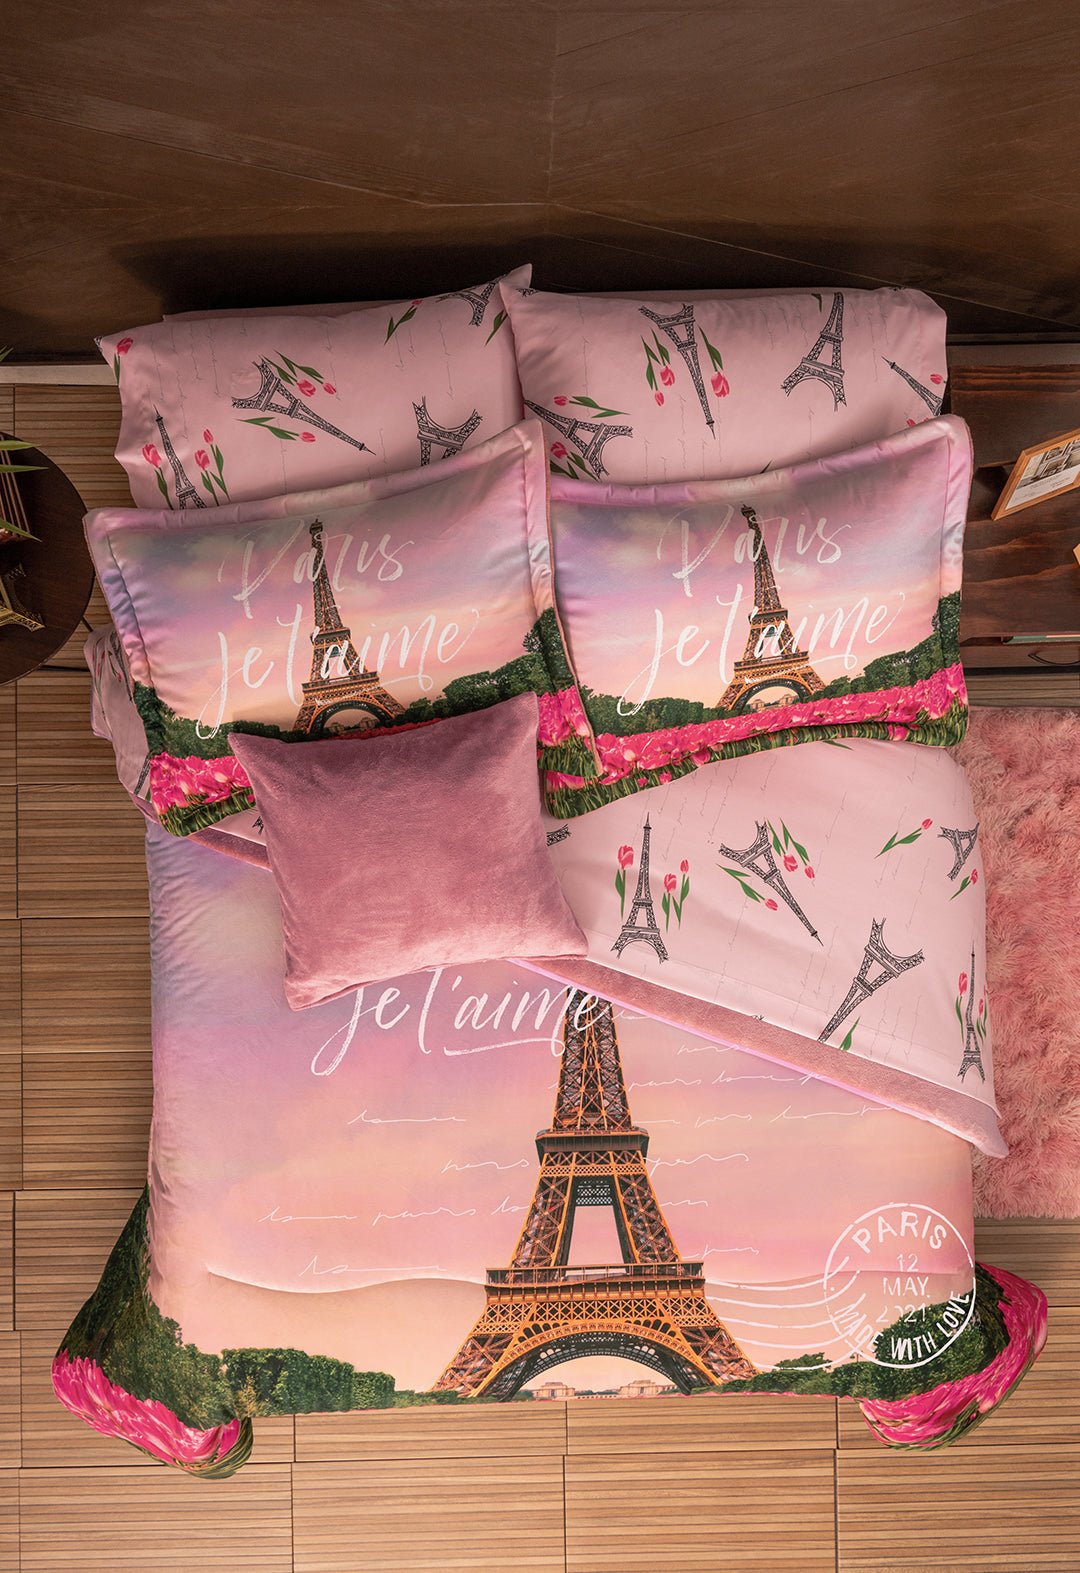 El Coordinado de Cobertor Supreme Romantique, es un hermoso cobertor de tonos Rosa, con diseños florales y estampado con la torre eiffel.